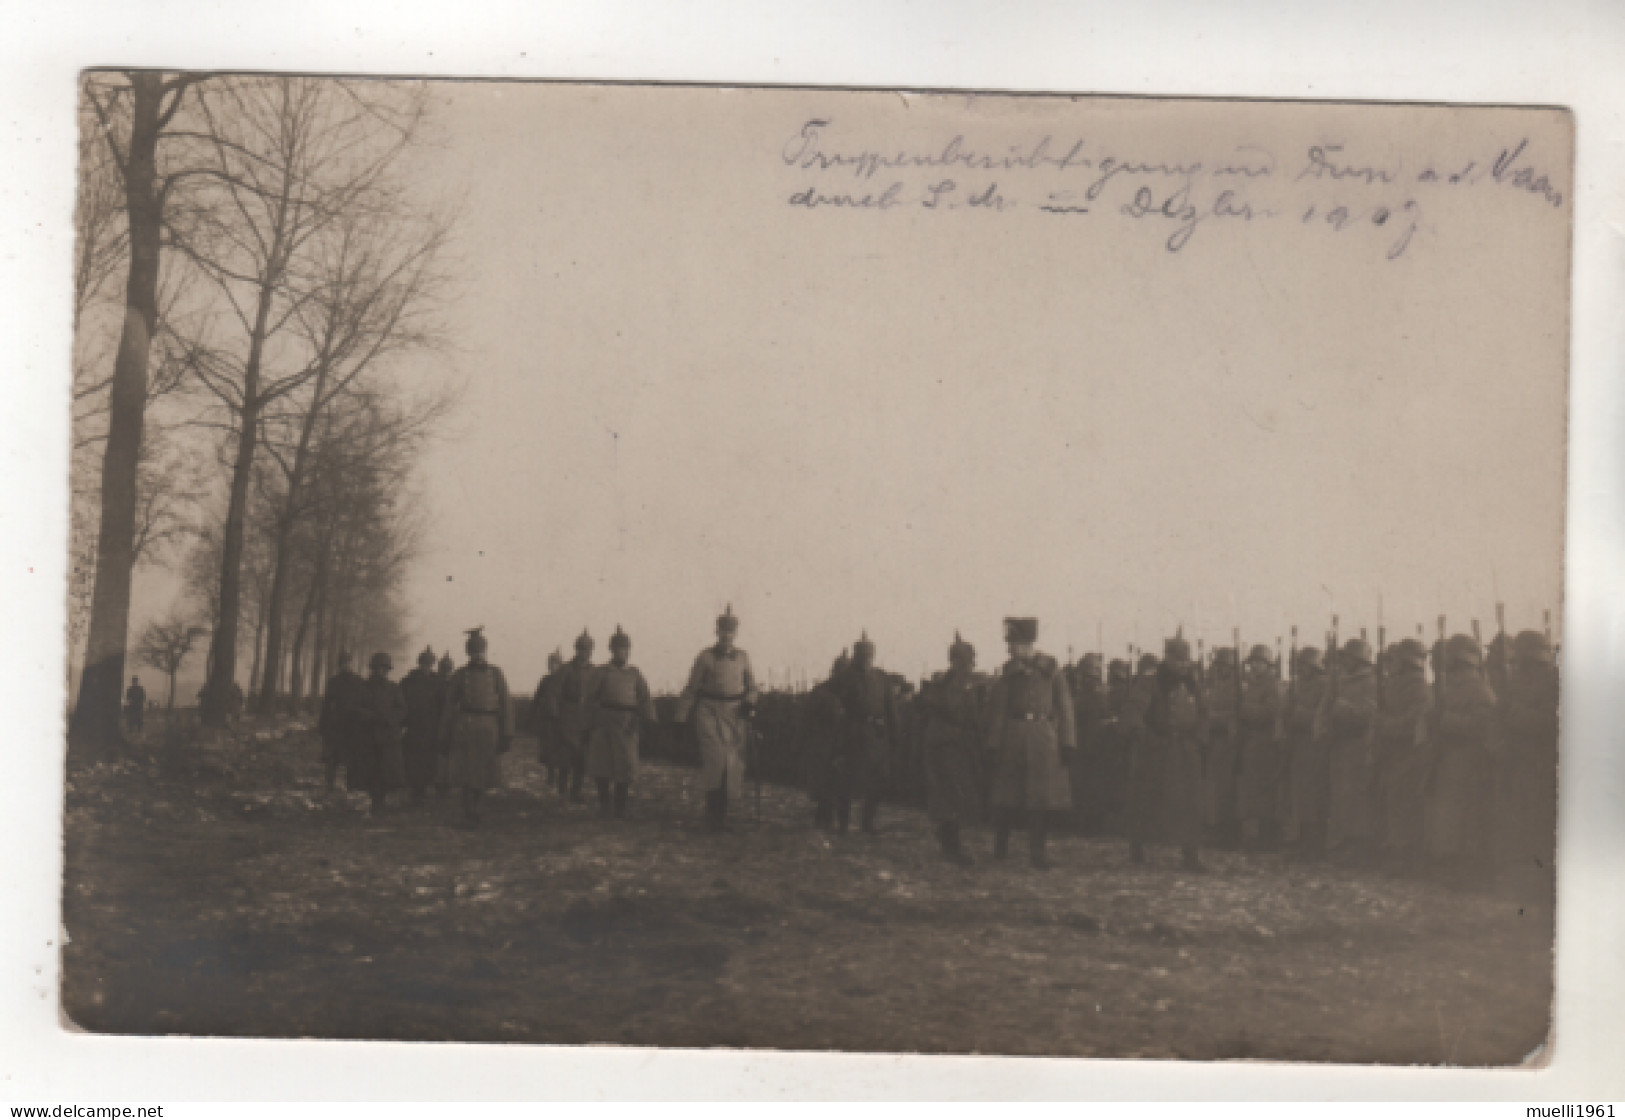 +5151, FOTO-AK, WK I,  Frankreich > [55] Meuse, Dun-sur-Meuse, Truppenbesichtigung - Weltkrieg 1914-18